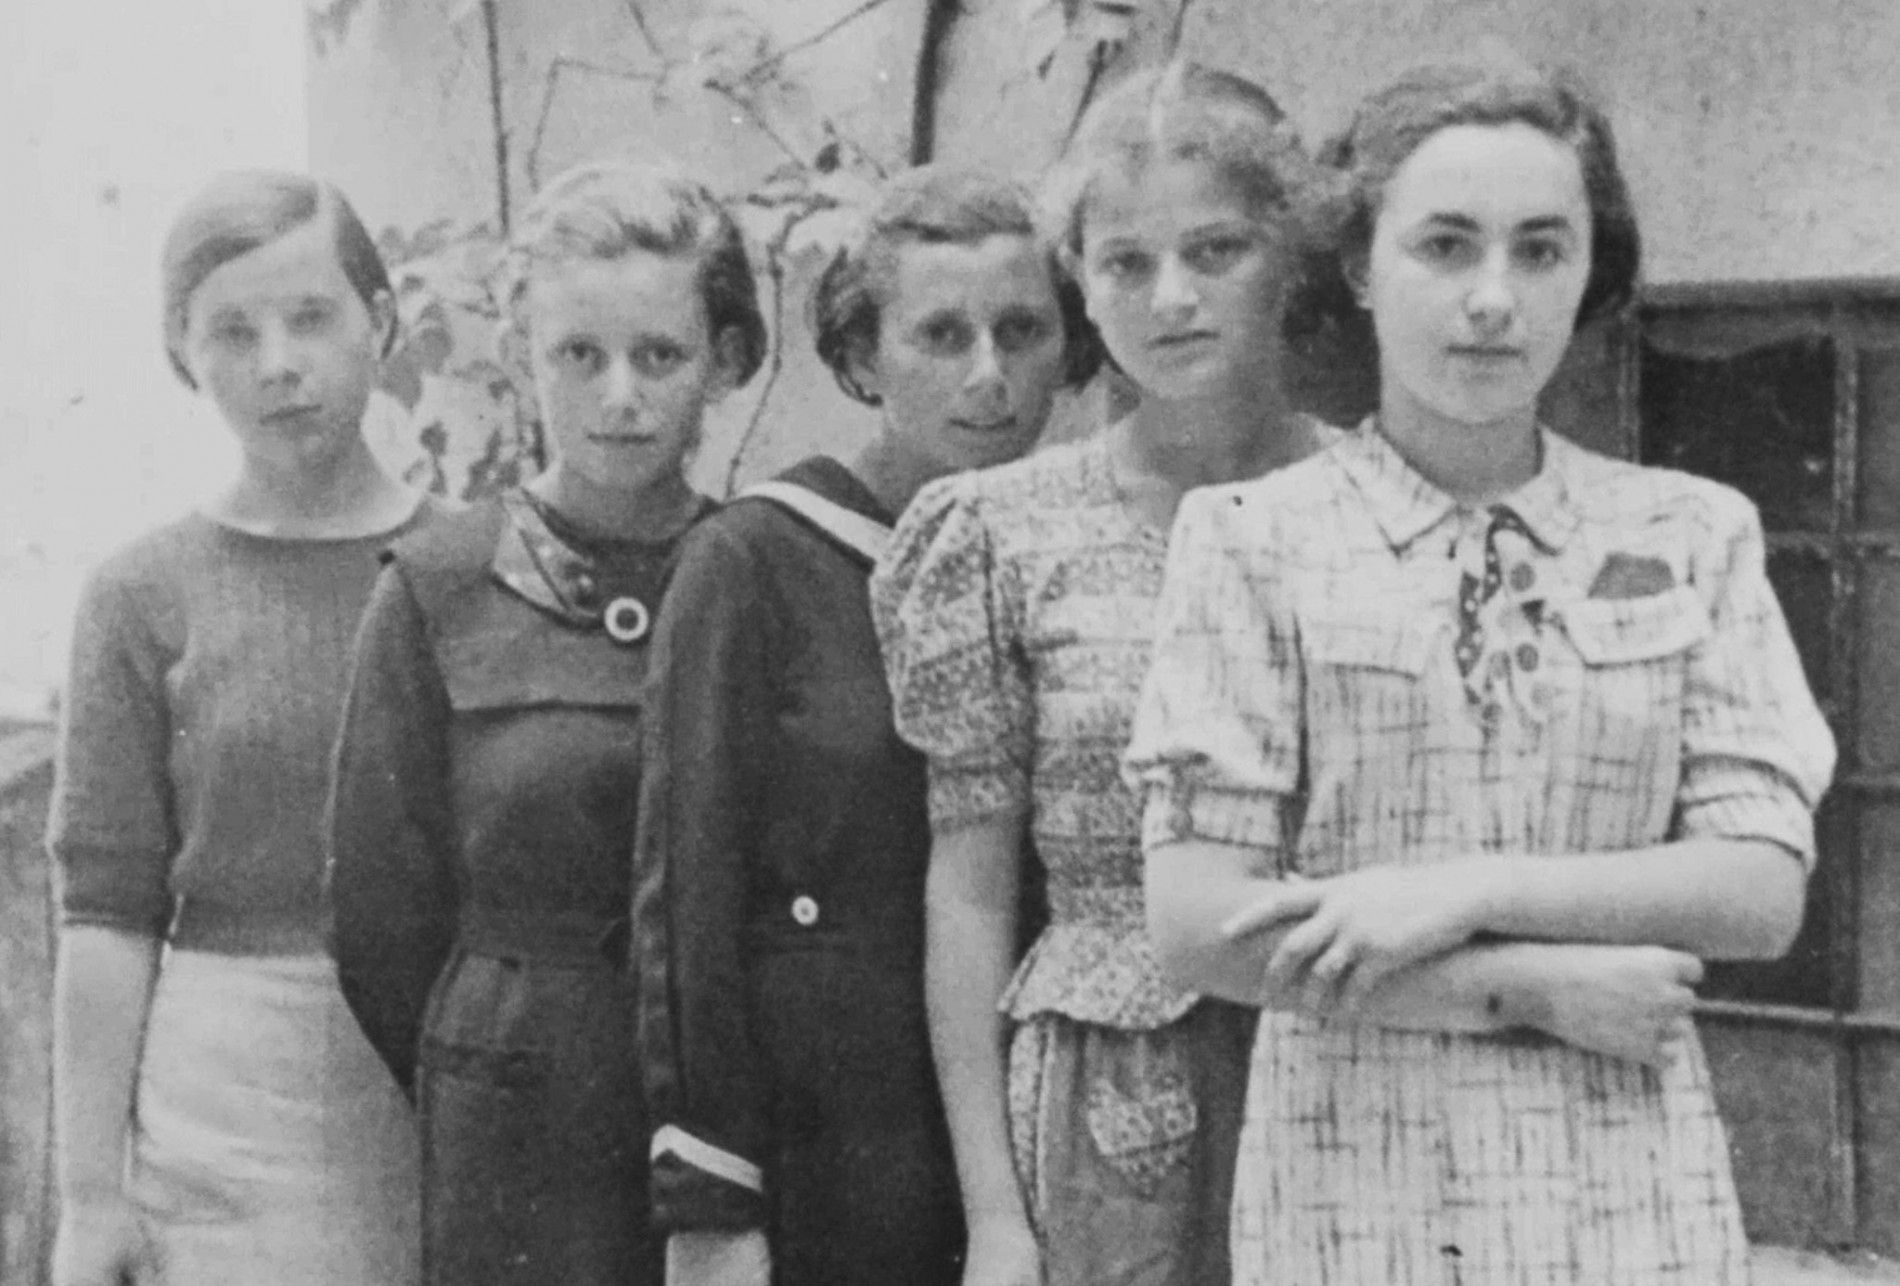 Las 999 adolescentes del primer tren a Auschwitz ignoradas por la historia